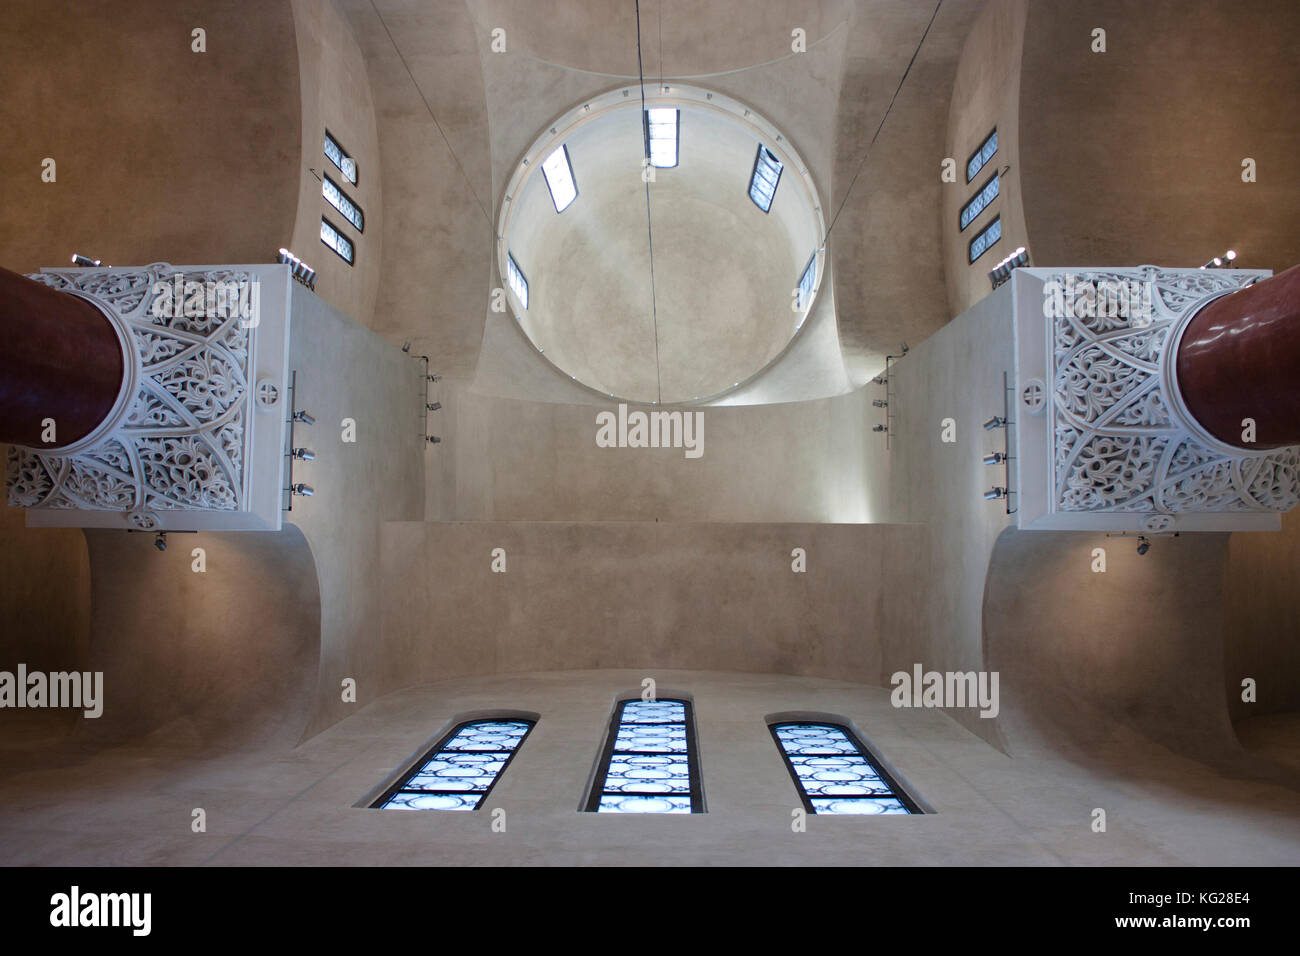 Détail architectural de l'intérieur de l'église orthodoxe st marko à Belgrade, Serbie : plafond avec dome , Colonnes , Windows , le 27 octobre 2017.. Banque D'Images